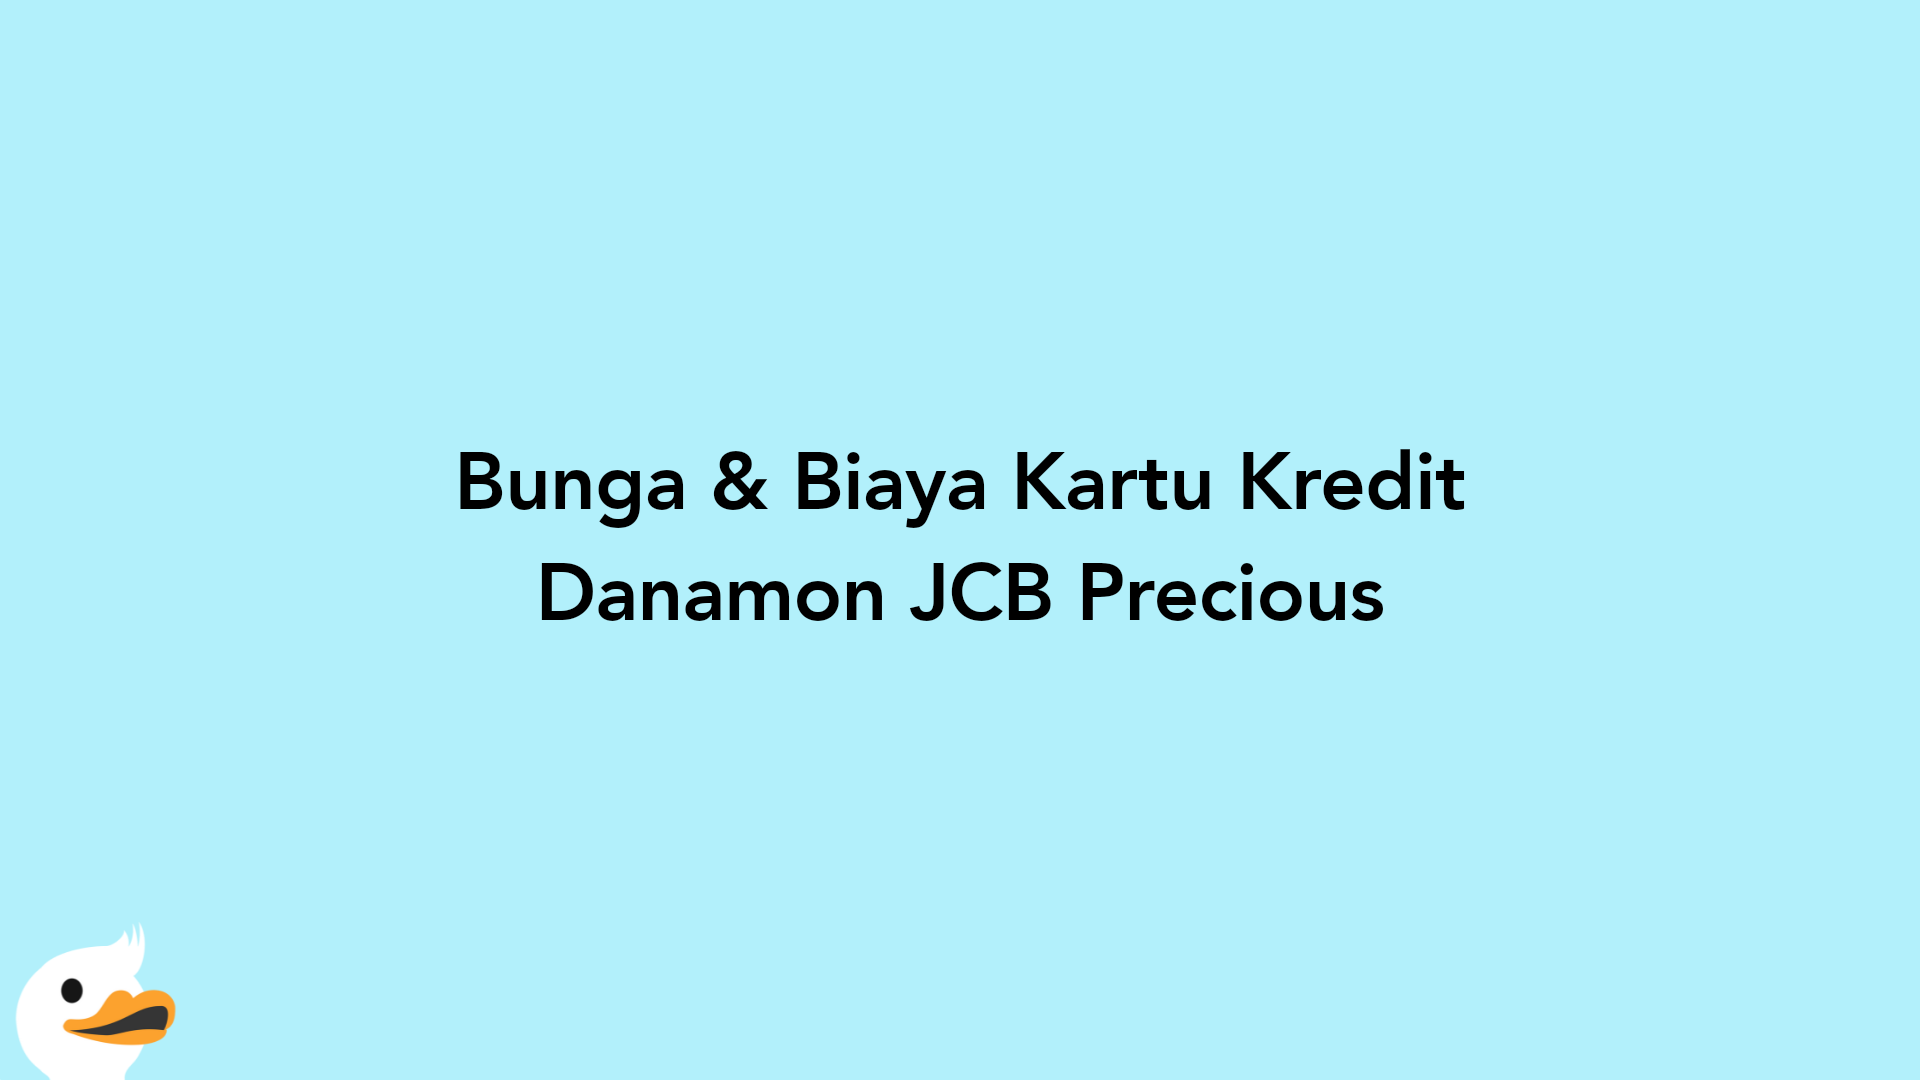 Bunga & Biaya Kartu Kredit Danamon JCB Precious